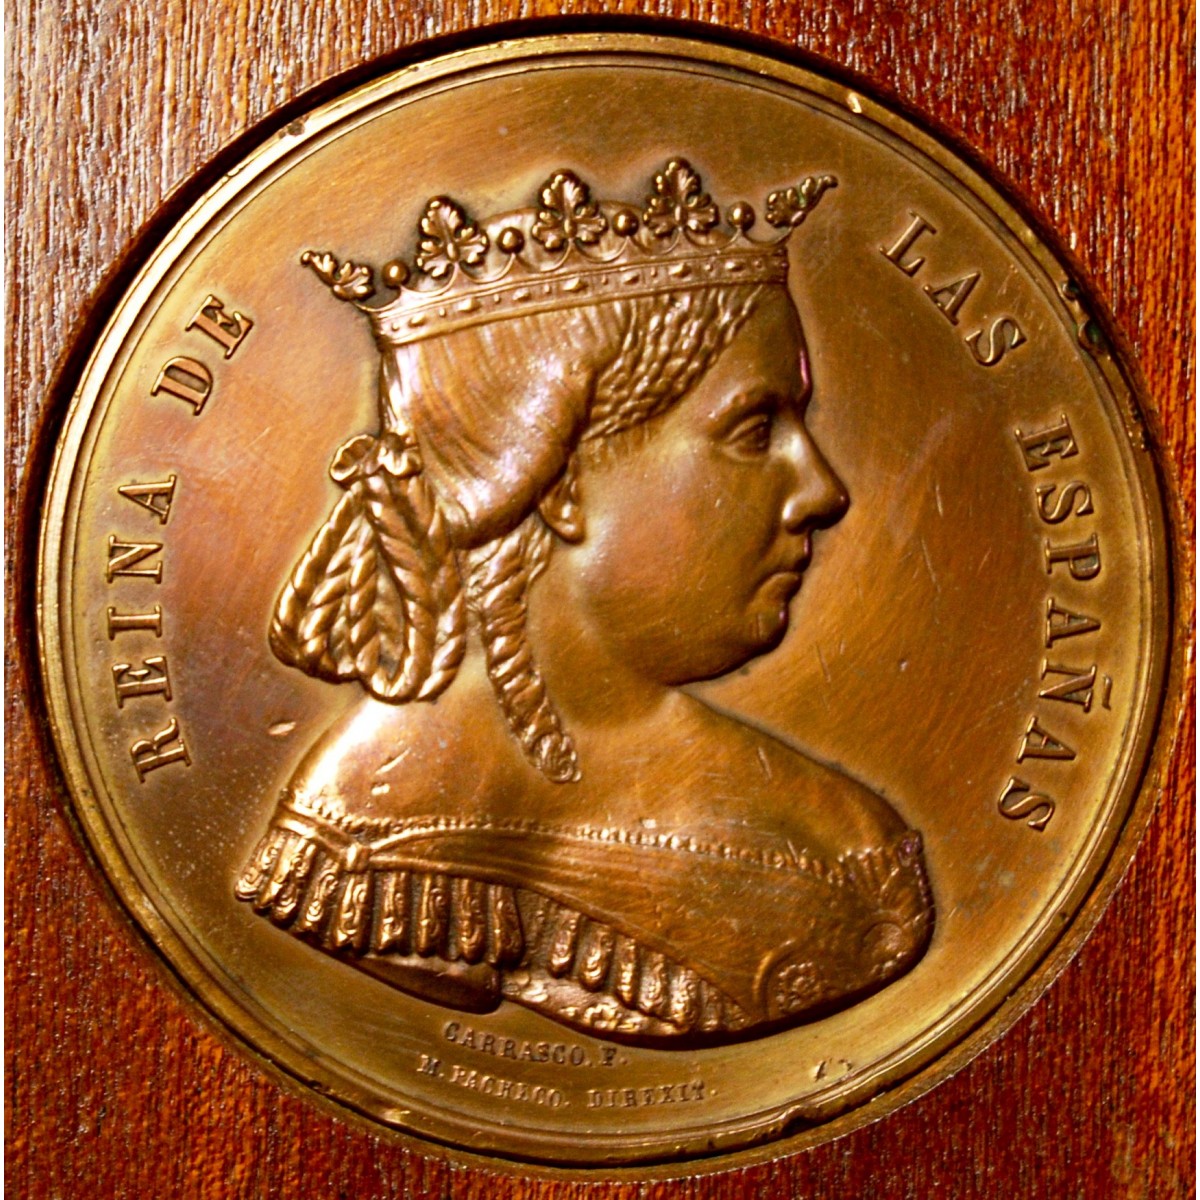 Medalla conmemorativa Isabel II, 1865.